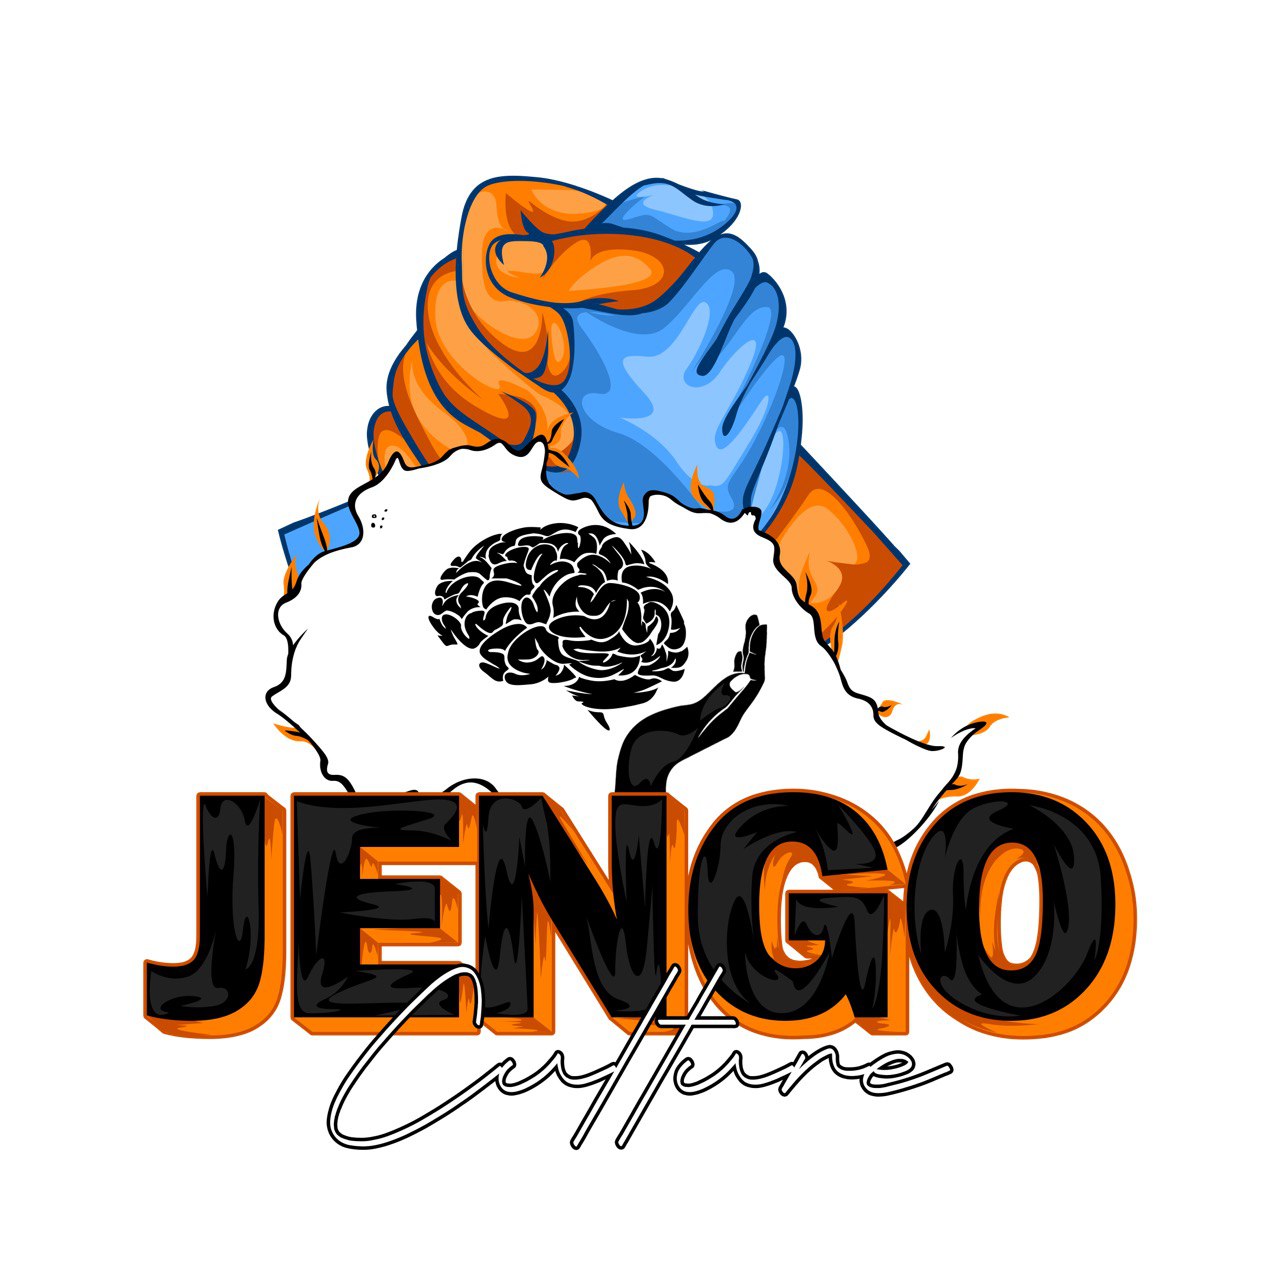 Jengo Culture